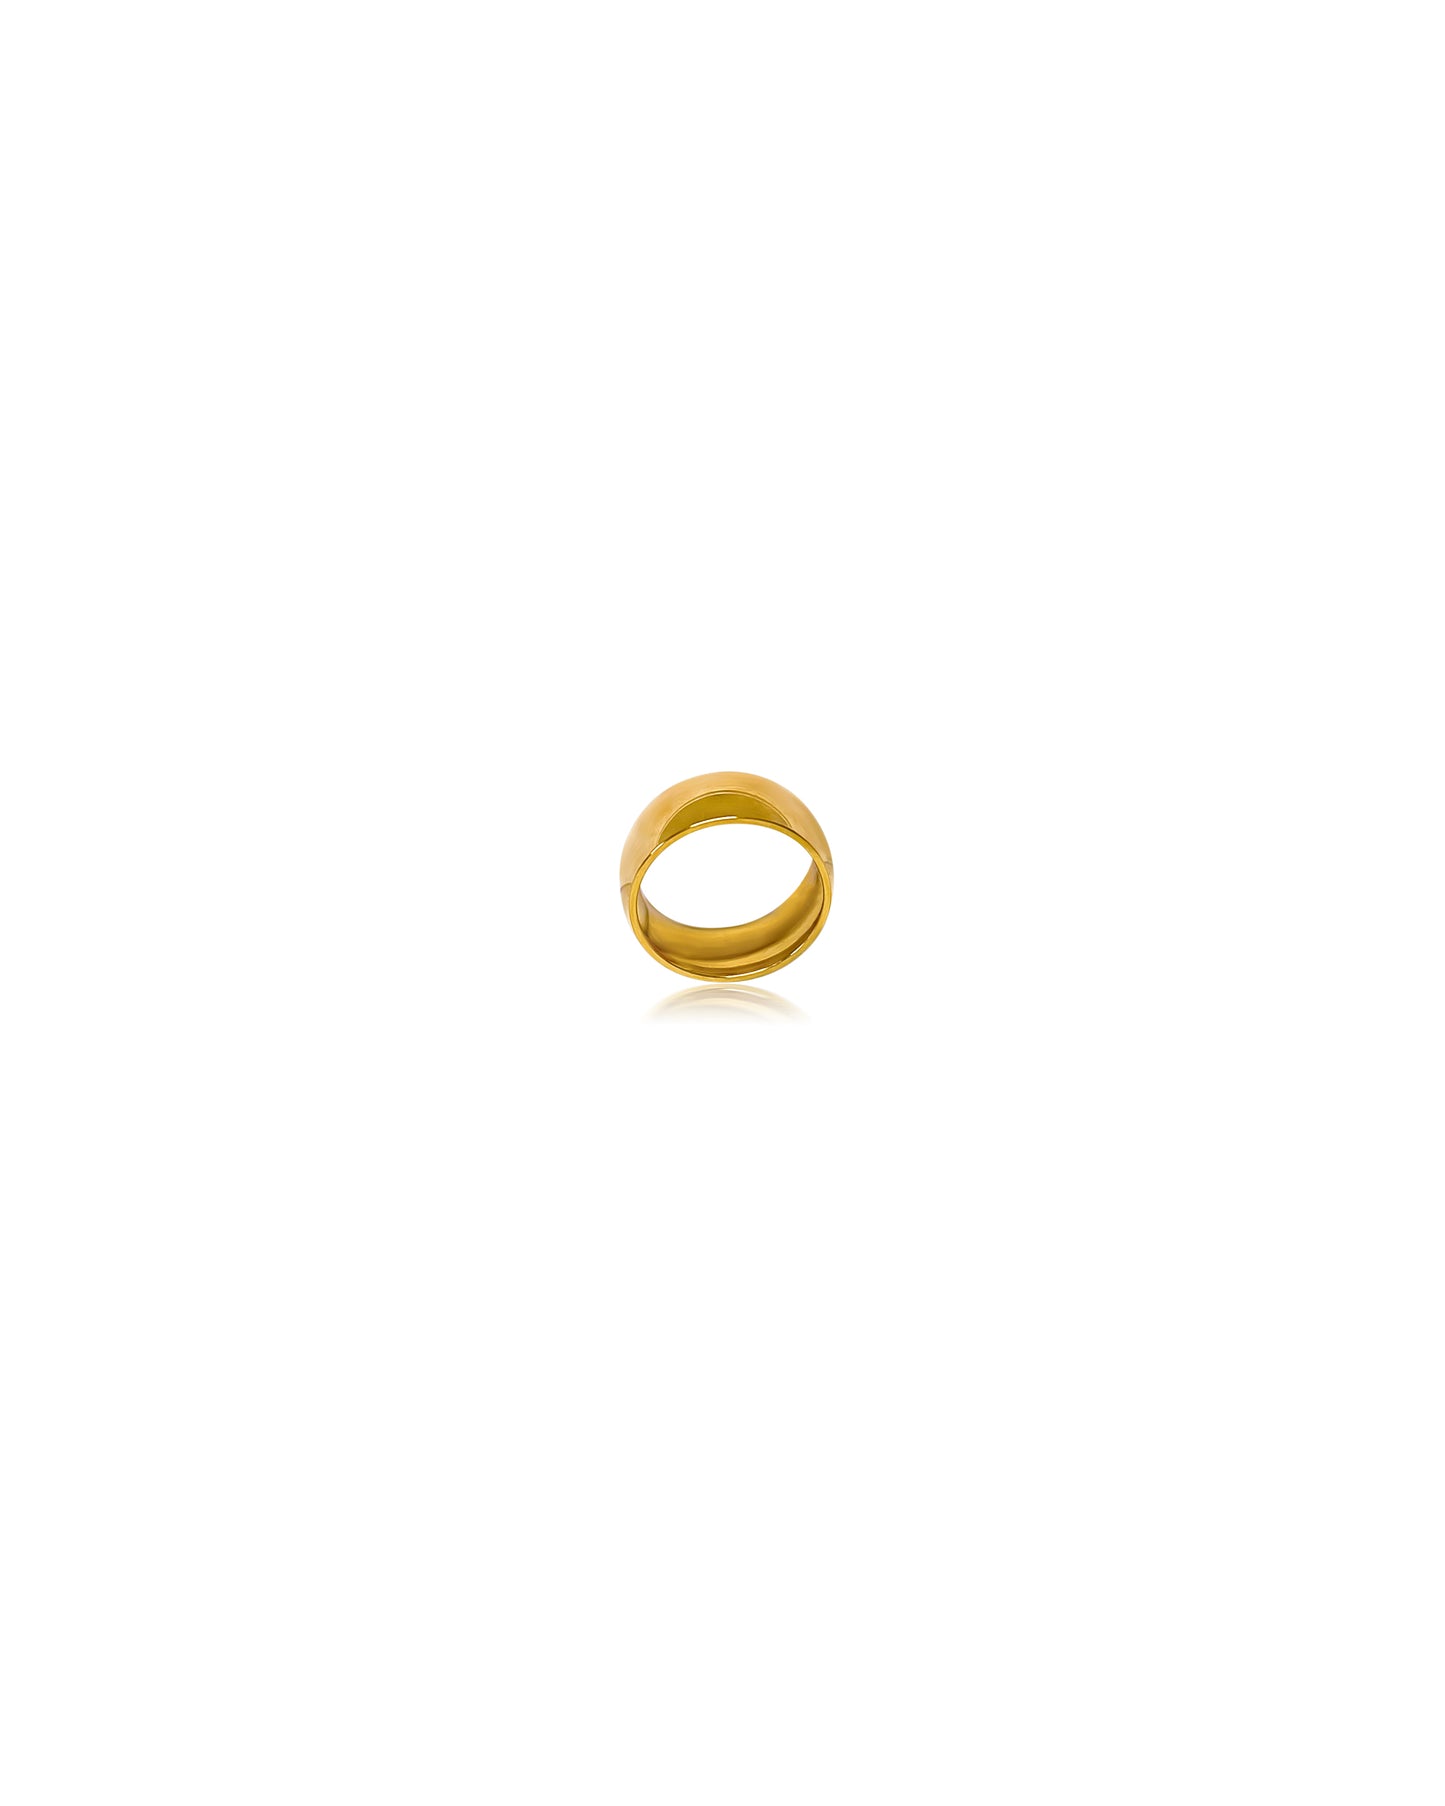 “ Nora” rings